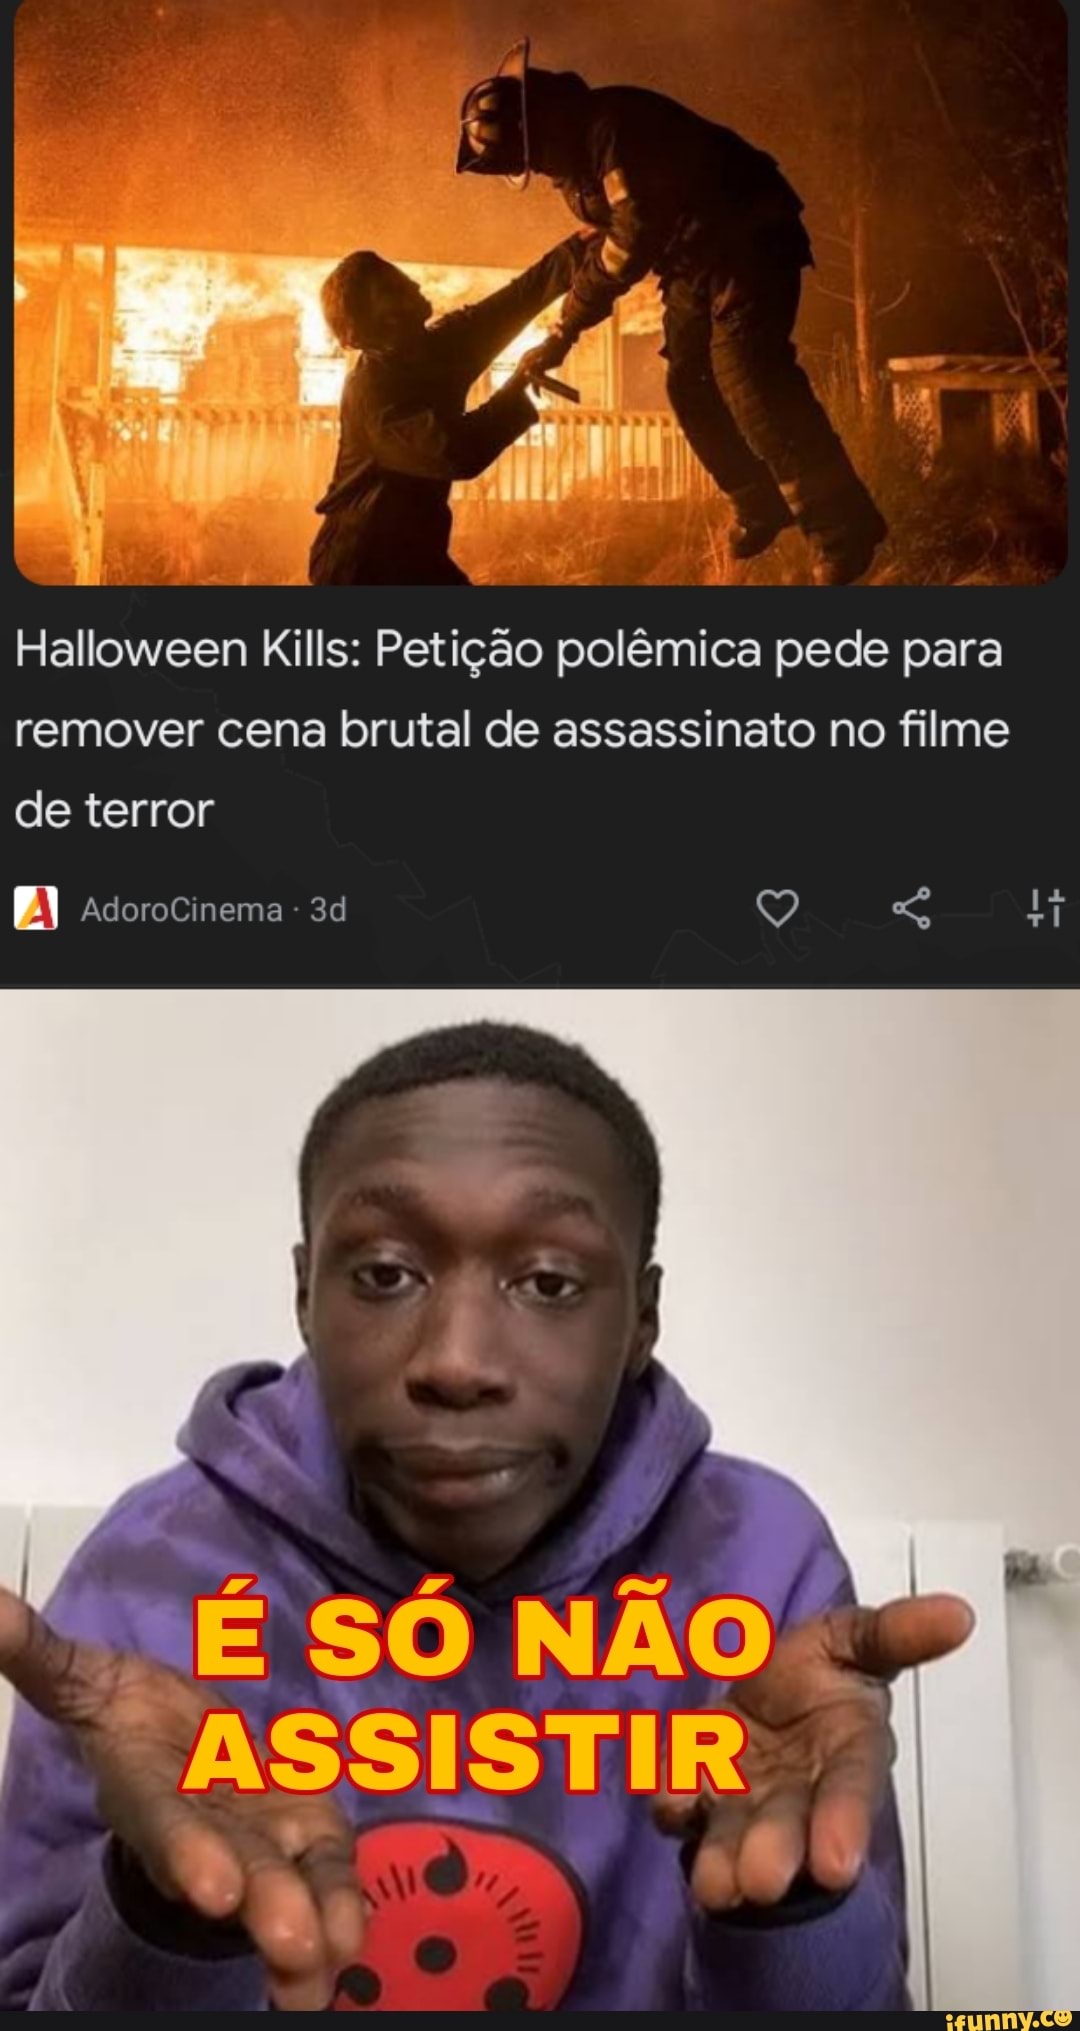 Halloween Kills: O Terror Continua - Filme 2021 - AdoroCinema